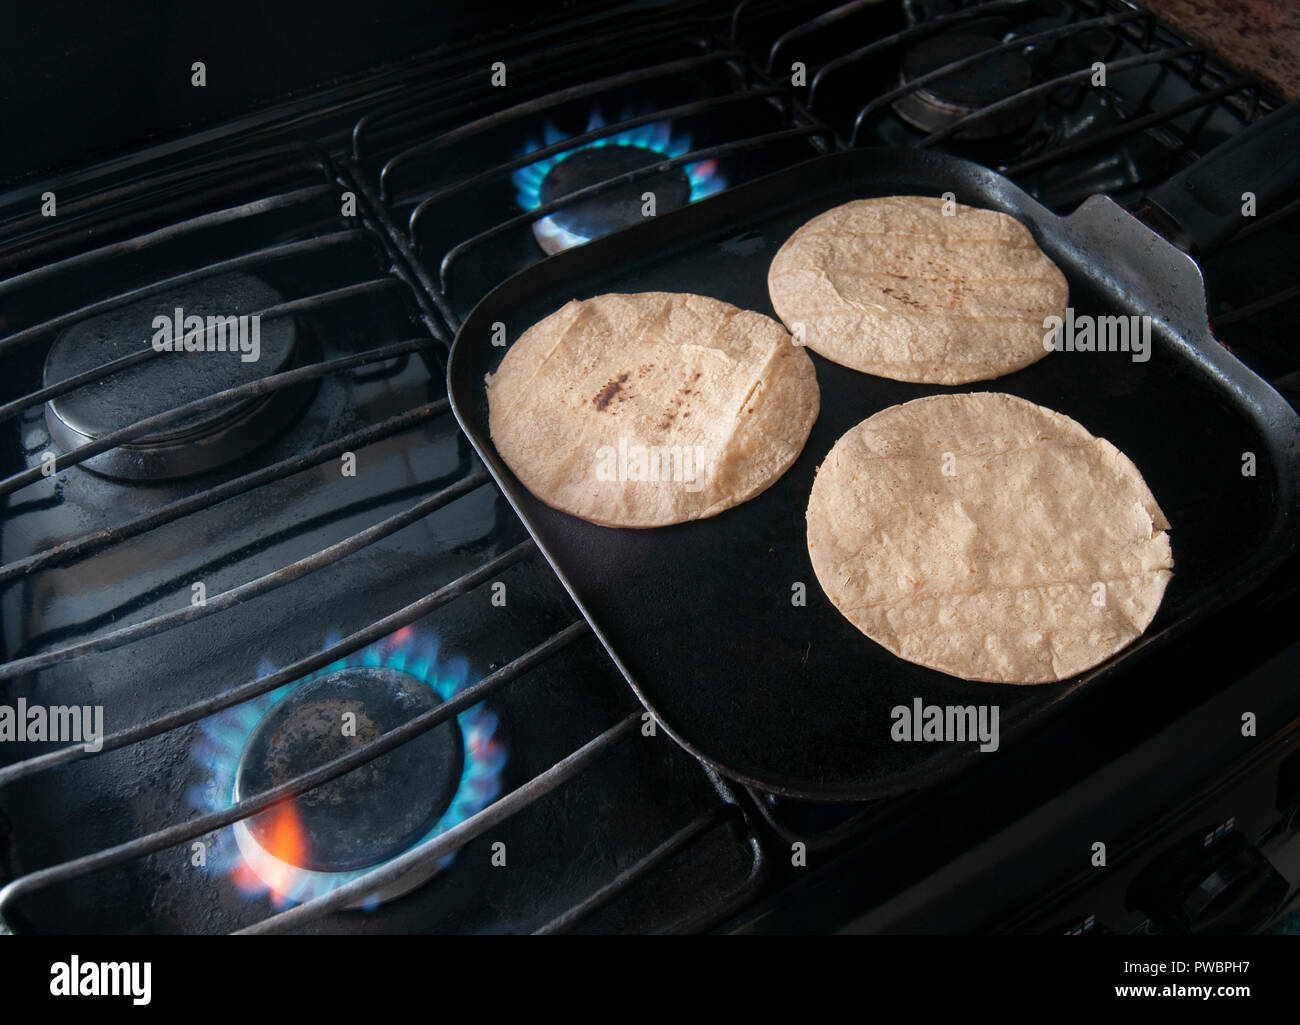 Comal plano de acero inoxidable para calentar tortillas